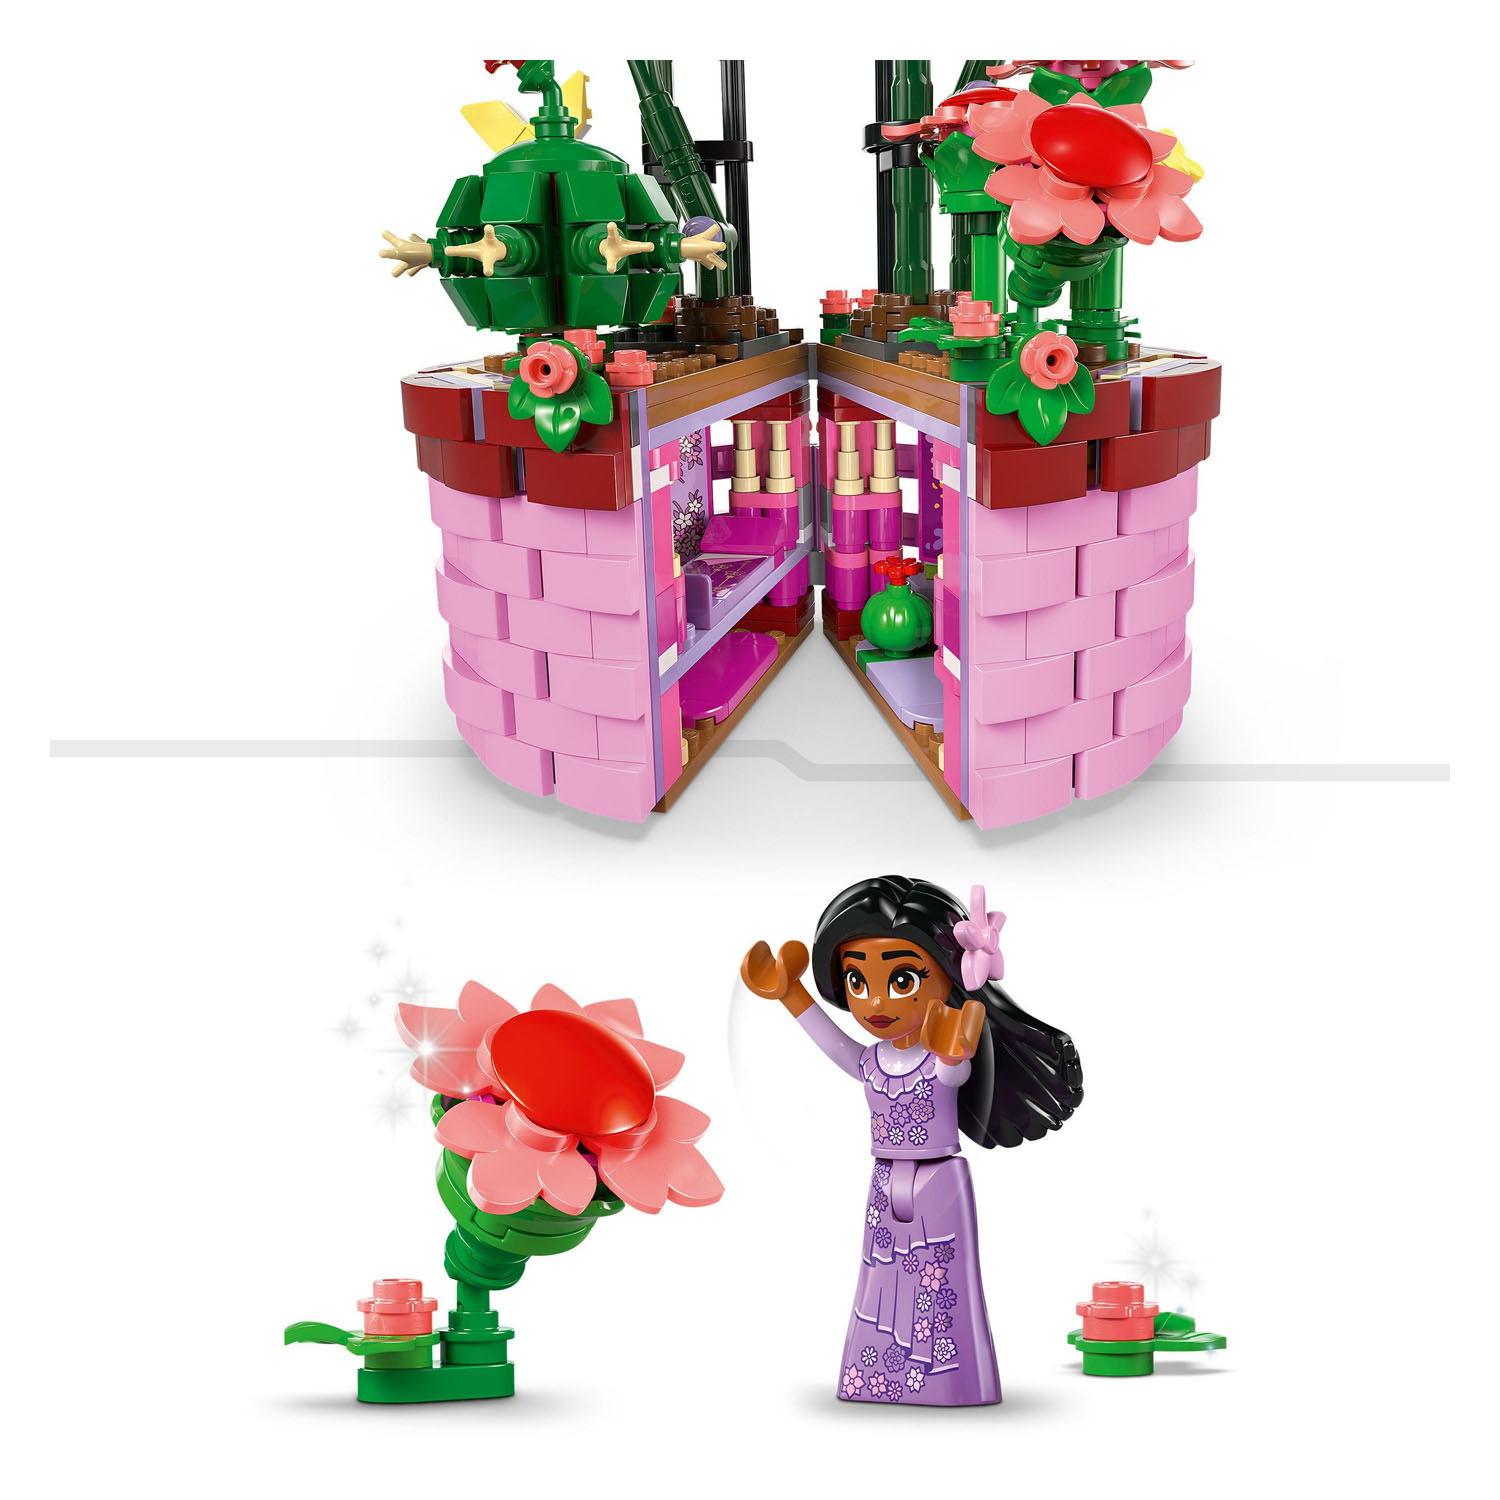 LEGO Disney 43237 Le pot de fleurs d'Isabela